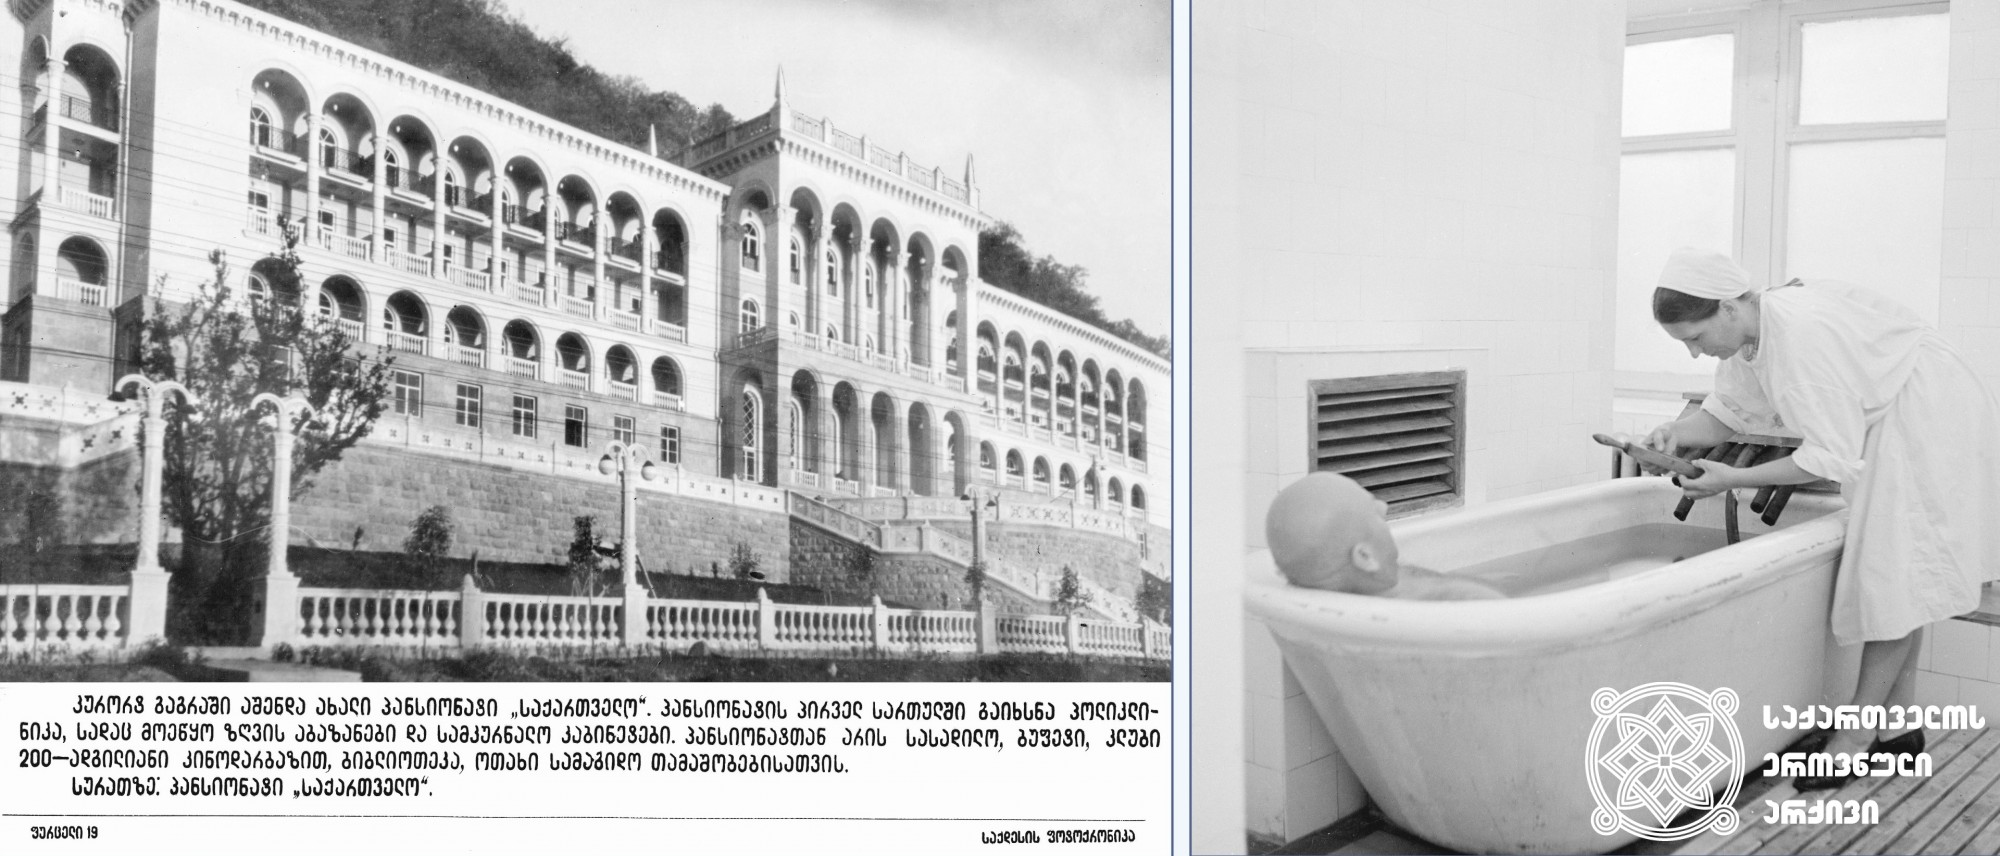 მარცხნივ: პანსიონატი „საქართველო“ გაგრაში. აფხაზეთი, 1961 წელი. უცნობი ავტორი. <br>
მარჯვნივ: სანატორიუმი „უკრაინა“ გაგრაში, სამკურნალო აბაზანის პროცედურა. აფხაზეთი, 1950 წელი. <br>
ფოტოს ავტორი გიორგი რაზმაძე. <br>
On the left: The boarding house “Sakartvelo” in Gagra. Apkhazeti, 1961. Unknown photographer. <br>
On the right: The Sanatorium “Ukraina” in Gagra, healing bath procedure. Apkhazeti, 1950. <br>
Photo by Giorgi Razmadze. <br>